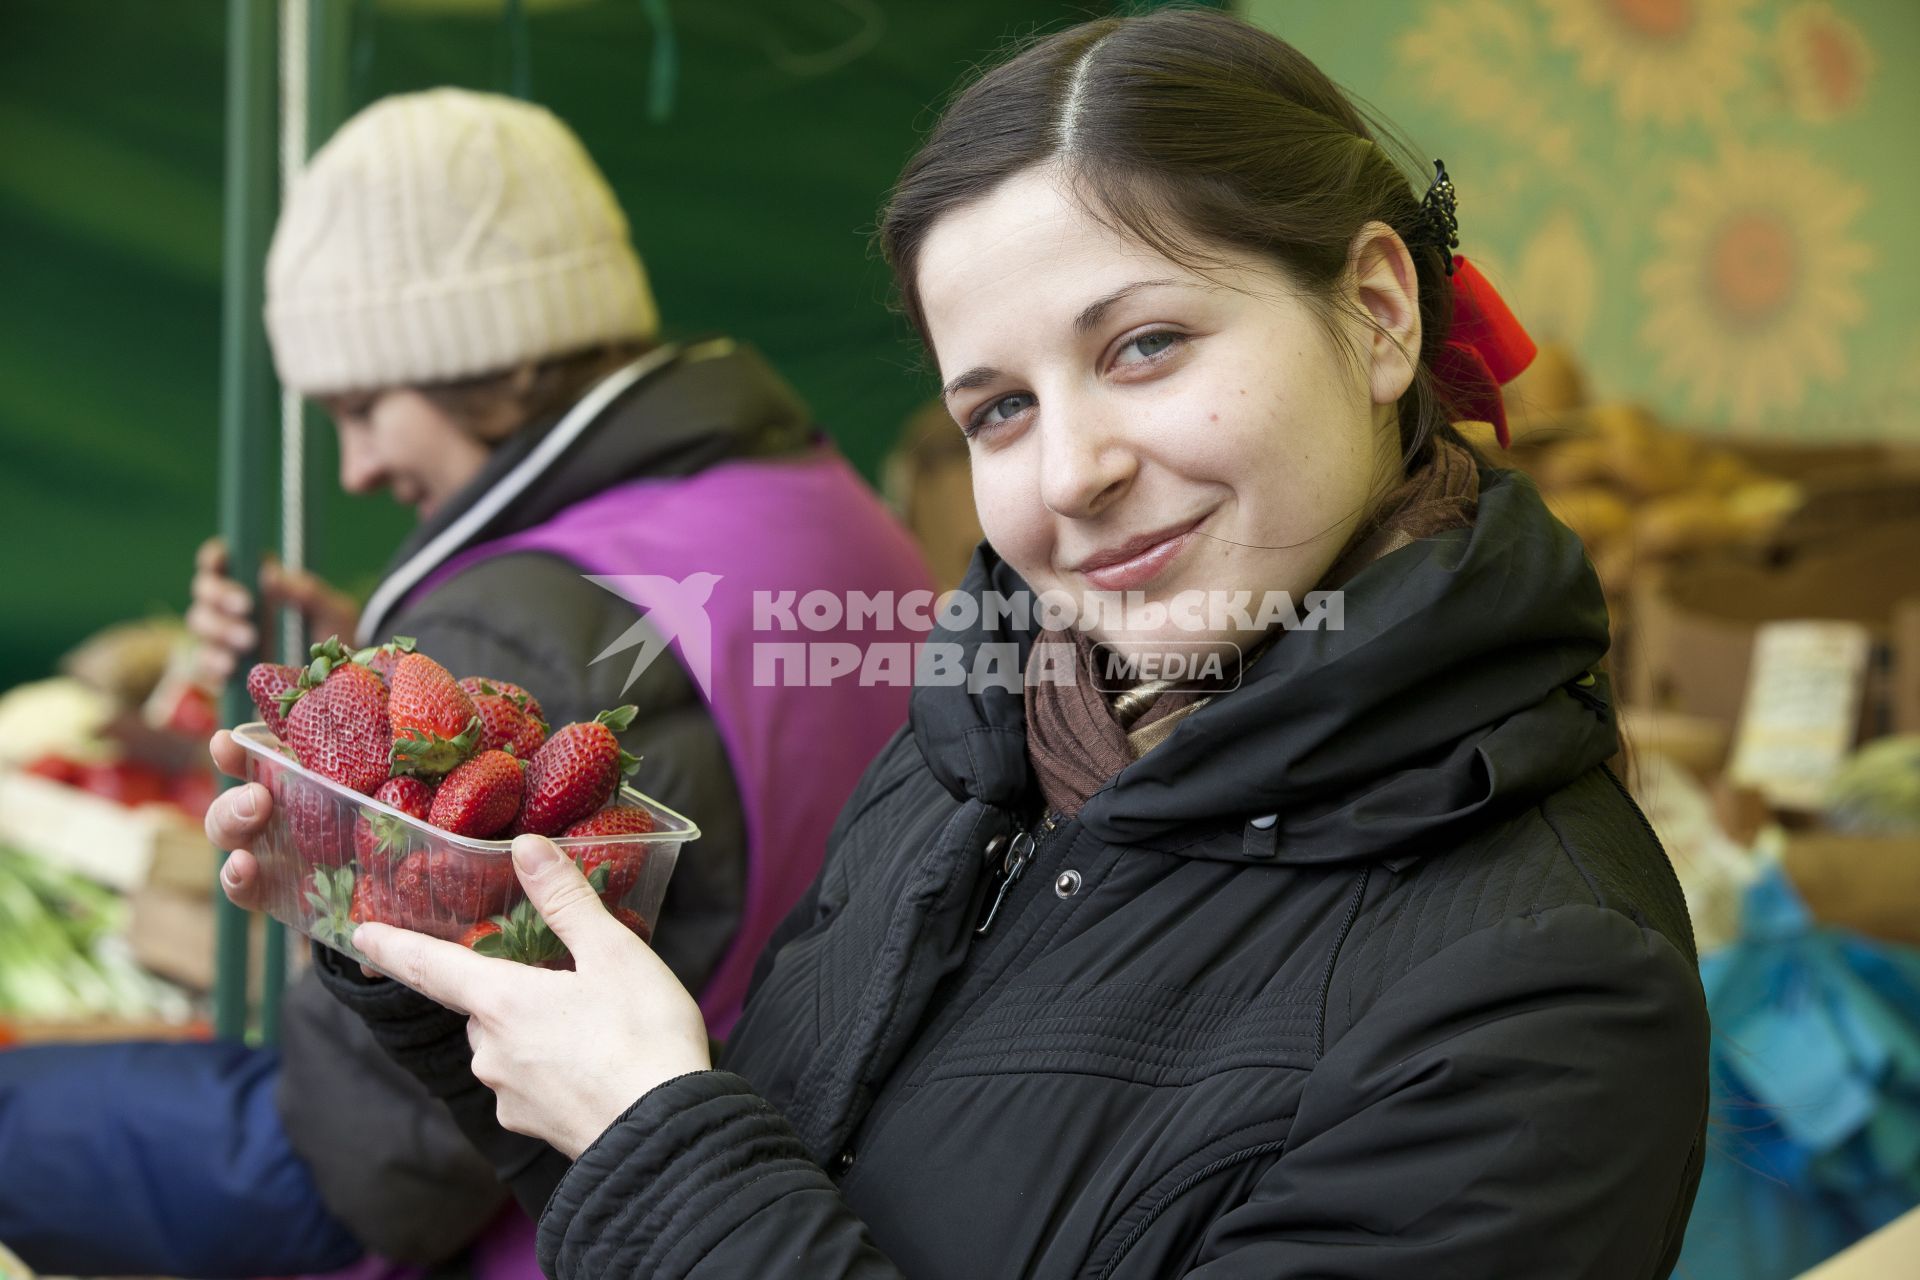 Девушка держит клубнику на рынке.